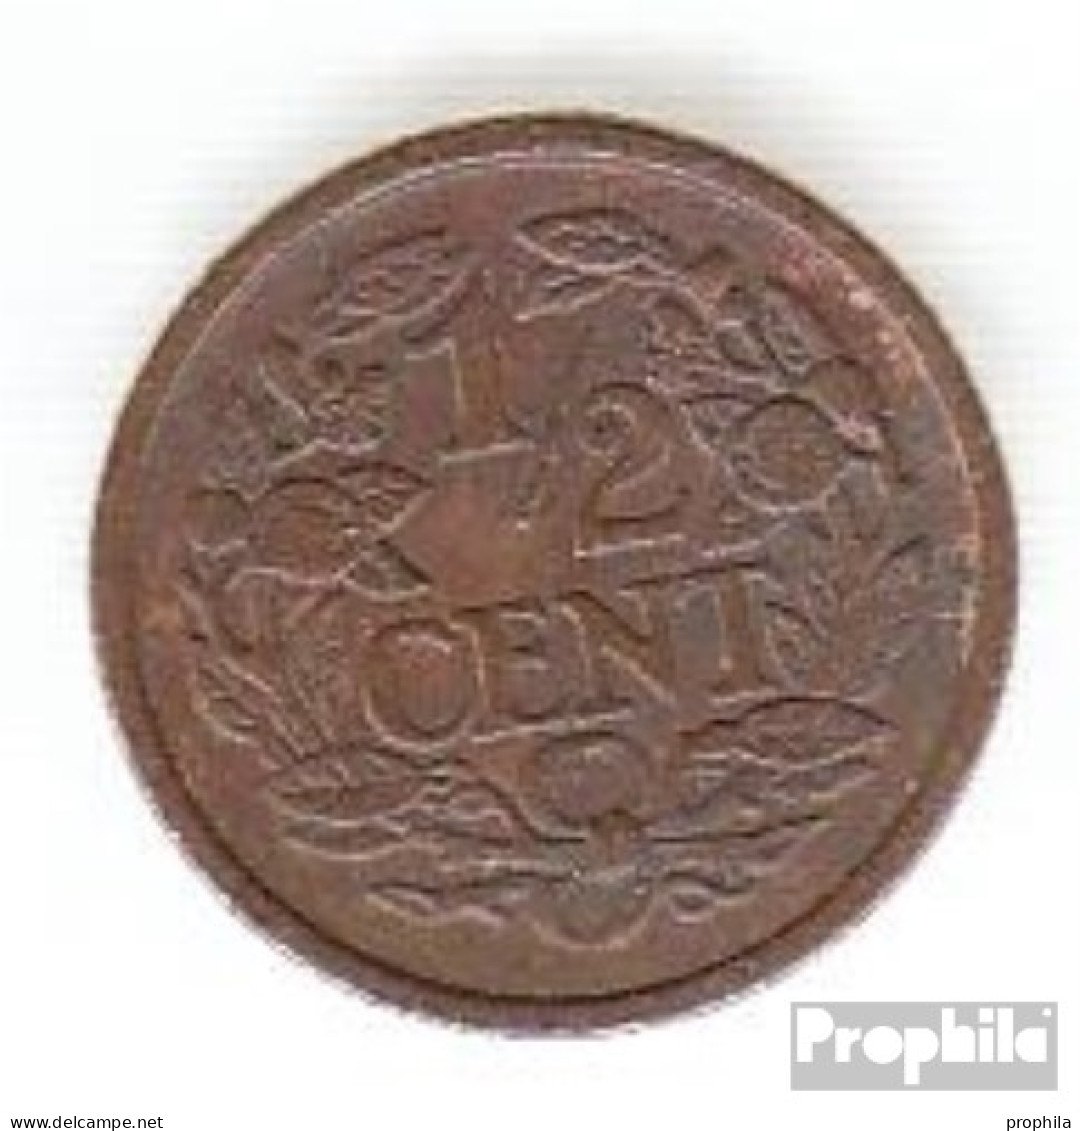 Niederlande KM-Nr. : 138 1916 Sehr Schön Bronze Sehr Schön 1916 1/2 Cent Gekrönter Löwe - 0.5 Cent